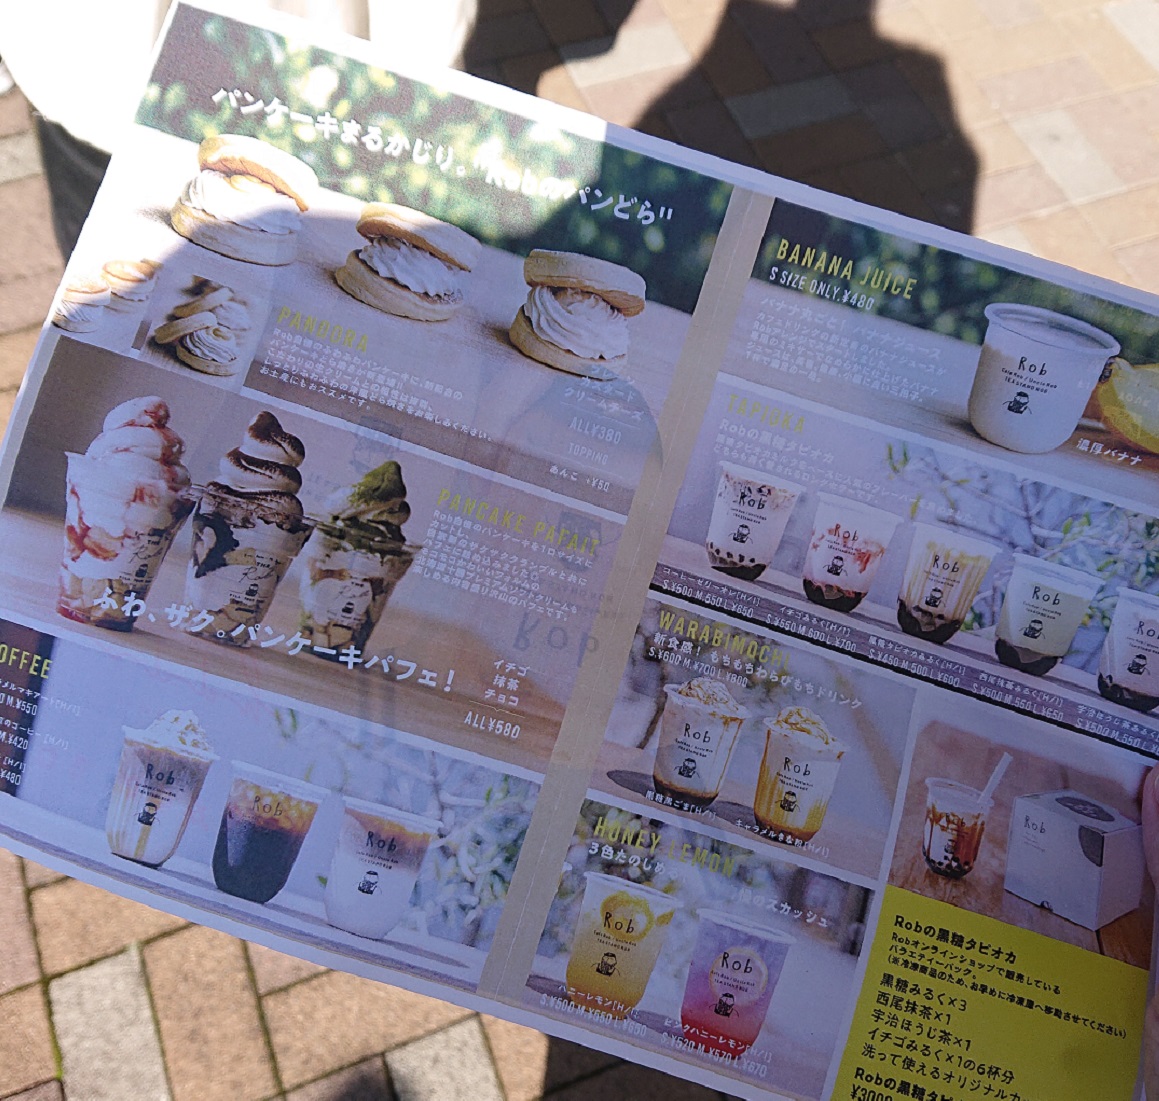 tea-stand-rob-tapioka-mizunami